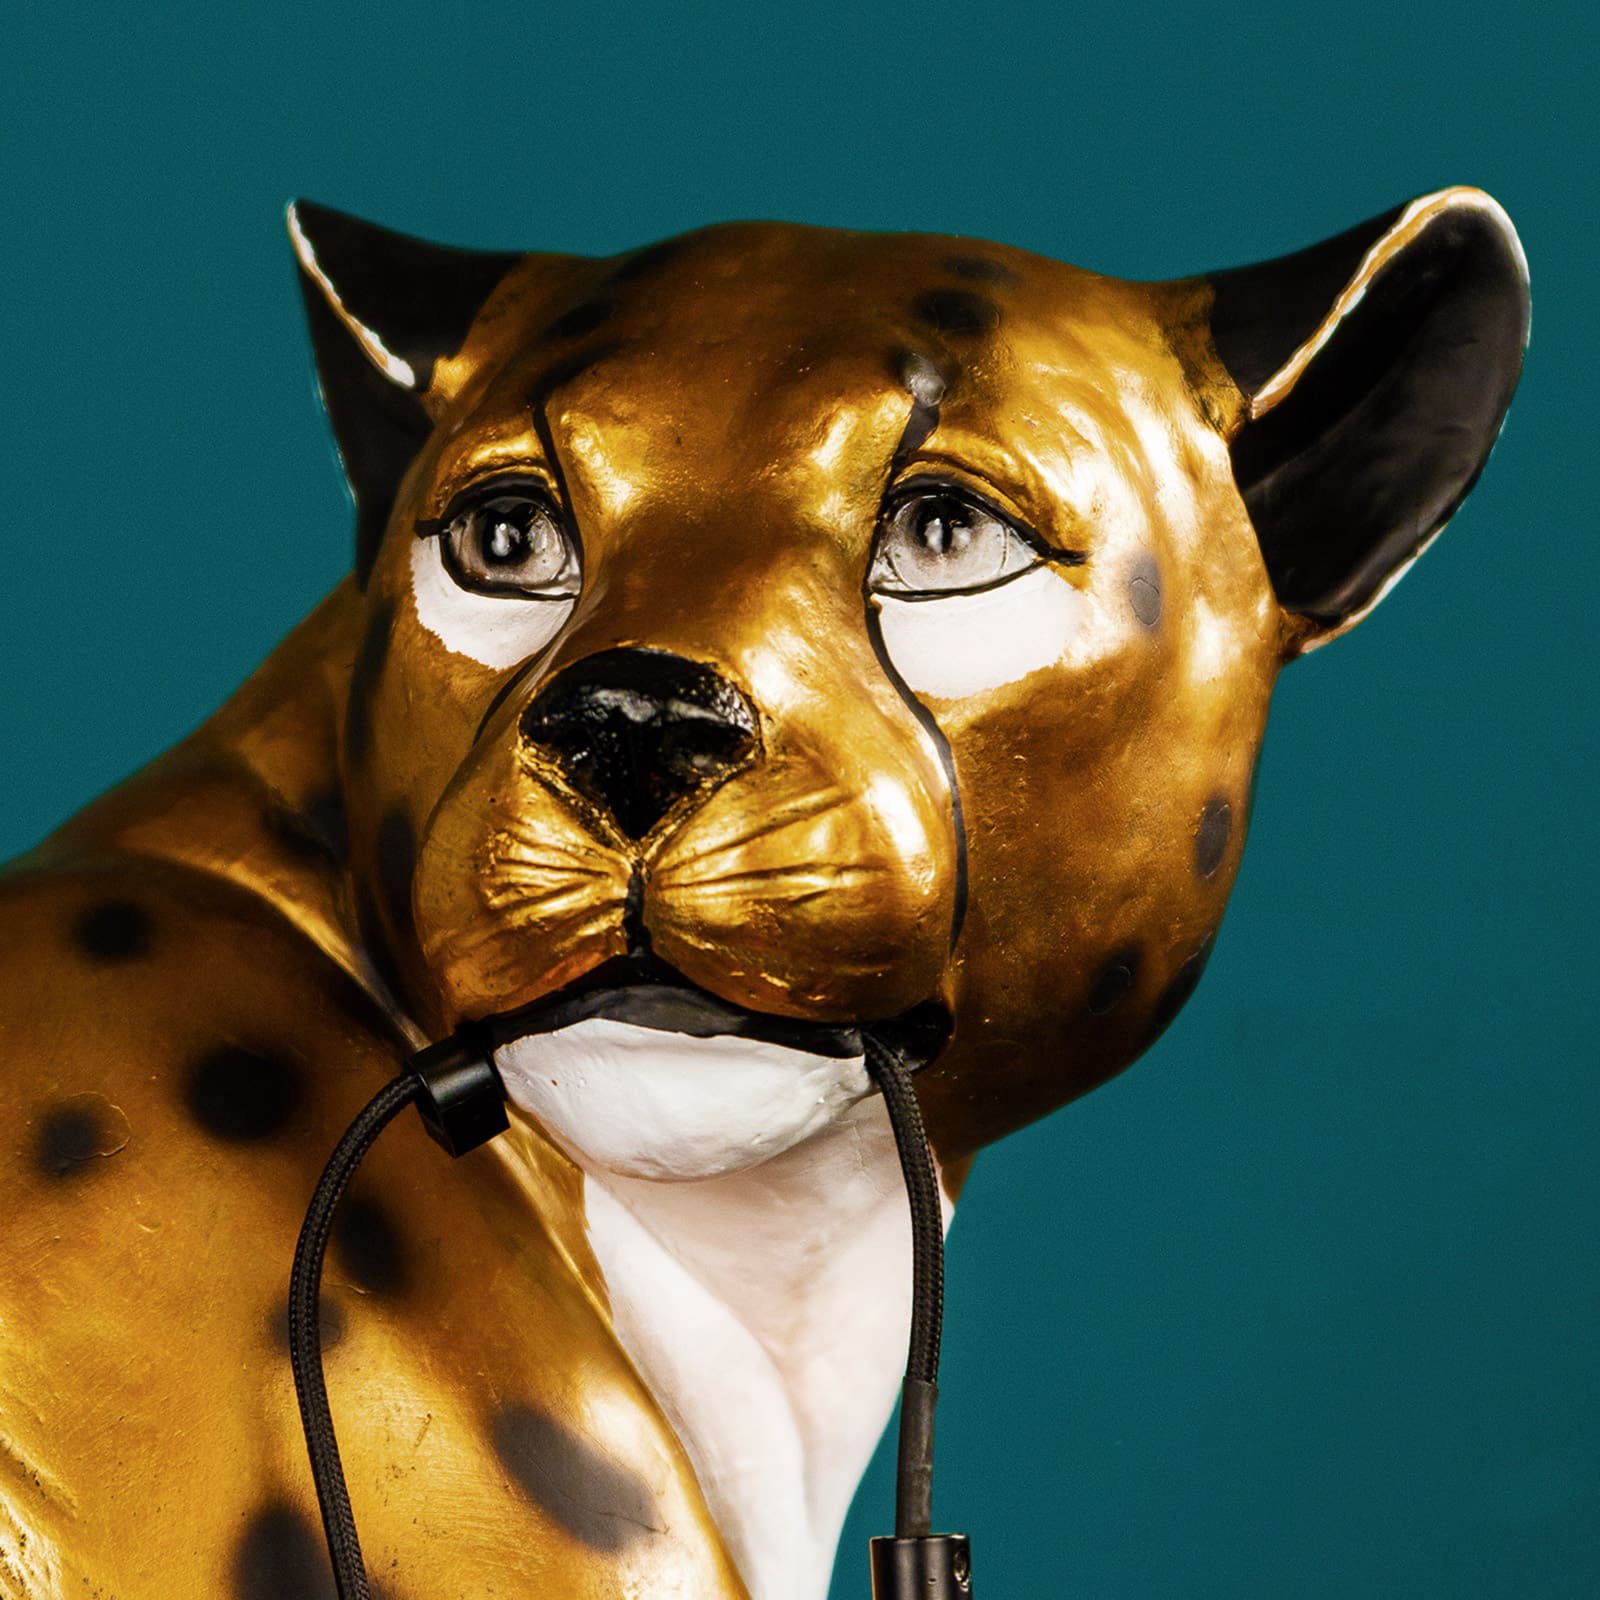 Stehleuchte Leopard Leopold, Limited Edition, handbemalt, gold/schwarz